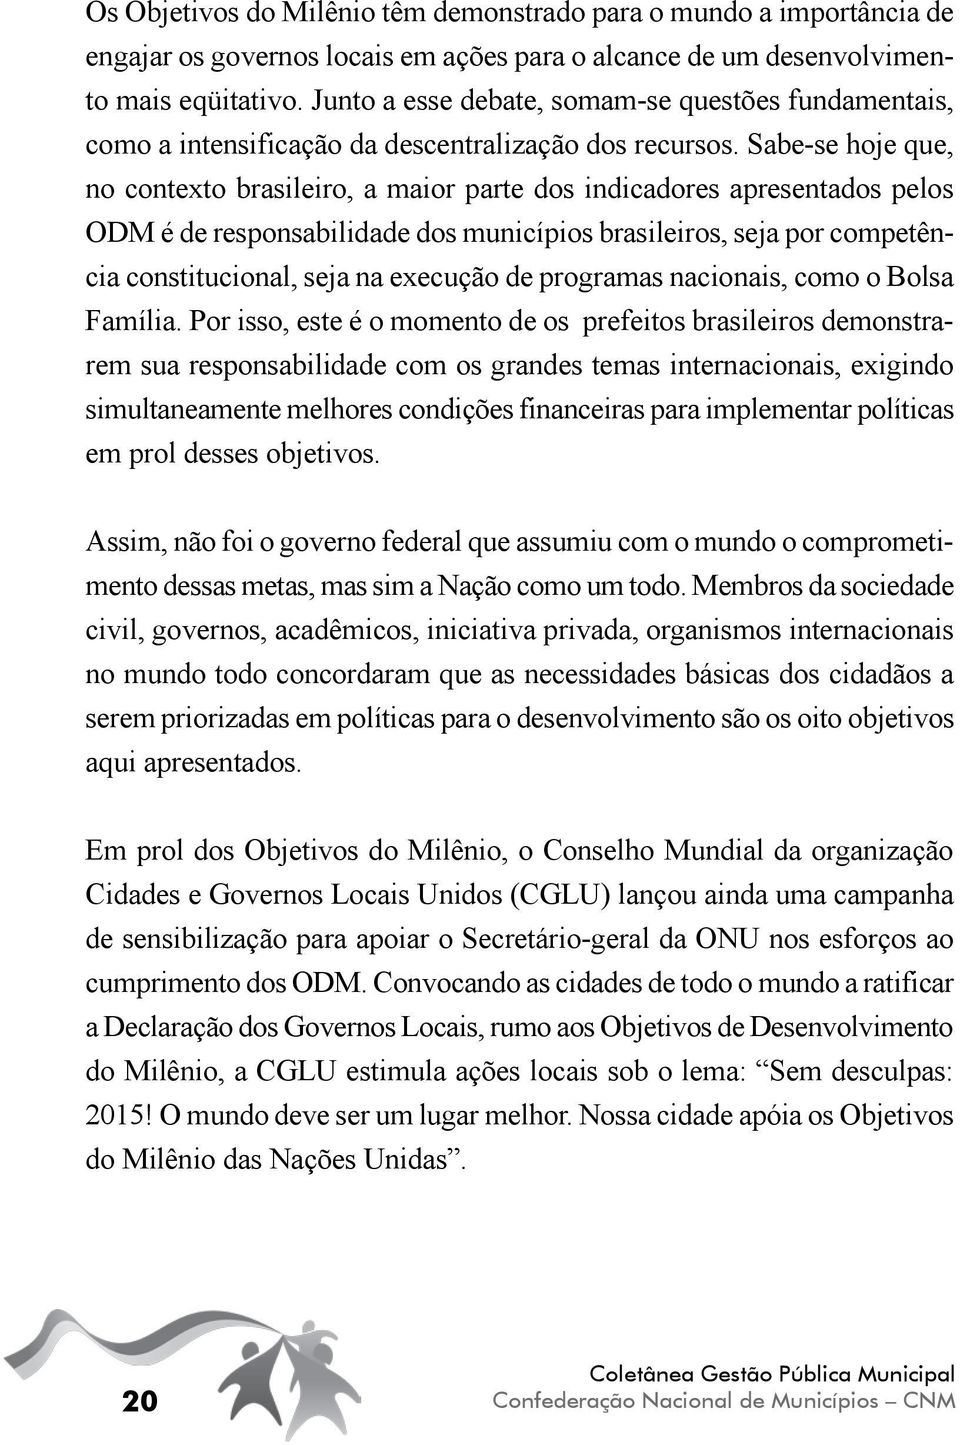 Sabe-se hoje que, no contexto brasileiro, a maior parte dos indicadores apresentados pelos ODM é de responsabilidade dos municípios brasileiros, seja por competência constitucional, seja na execução